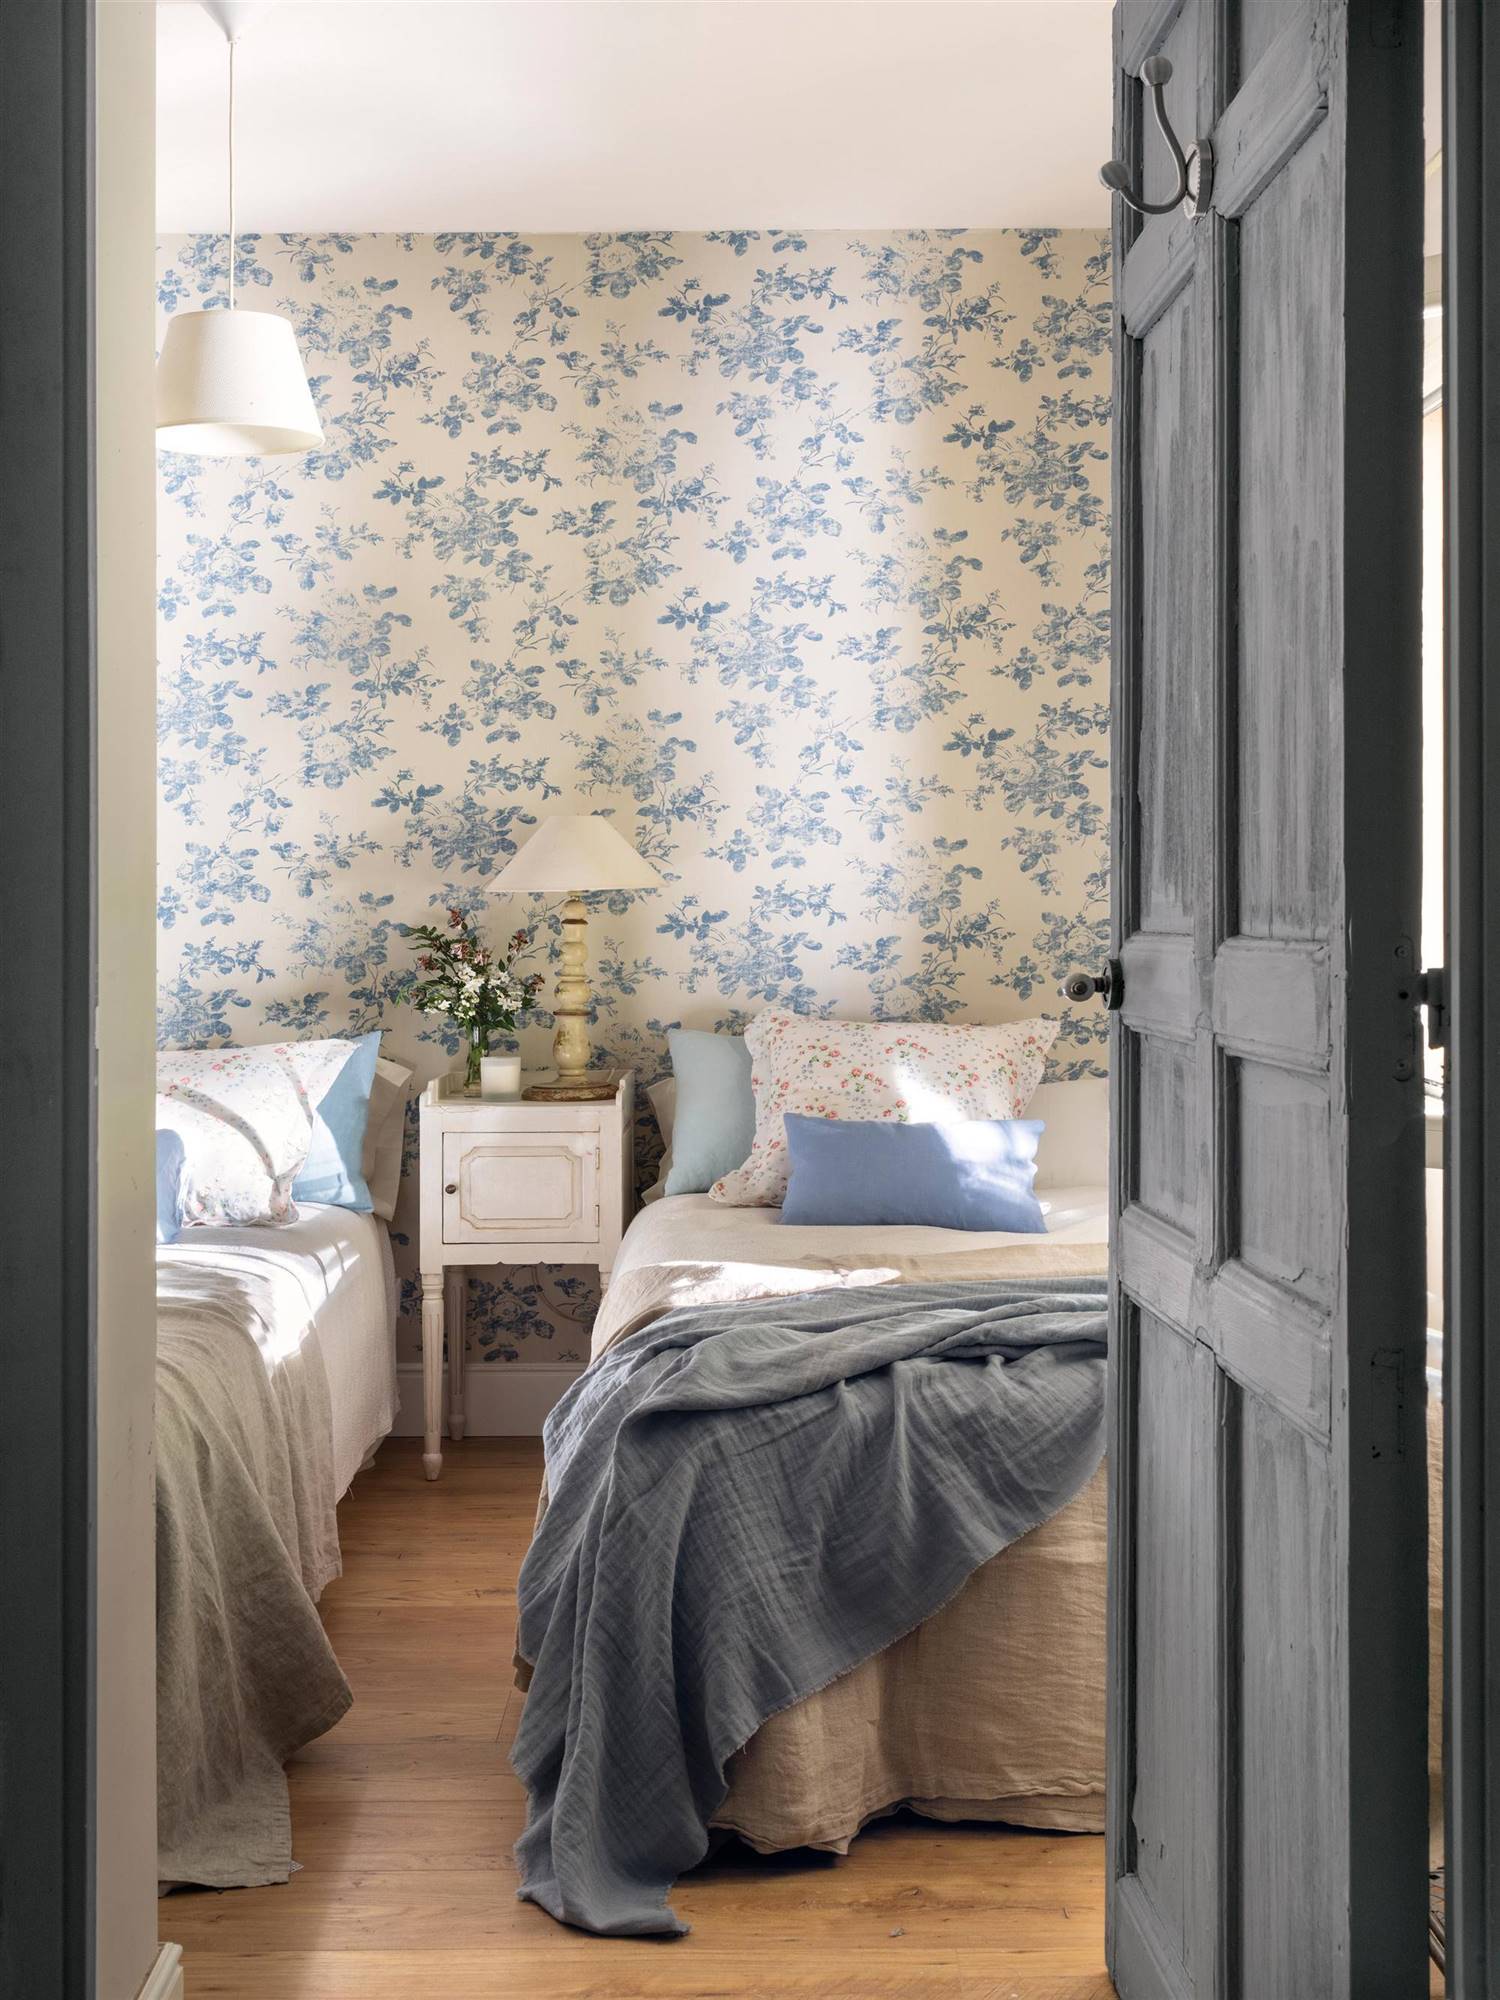 Dormitorio de primavera con papel pintado de flores en azul.